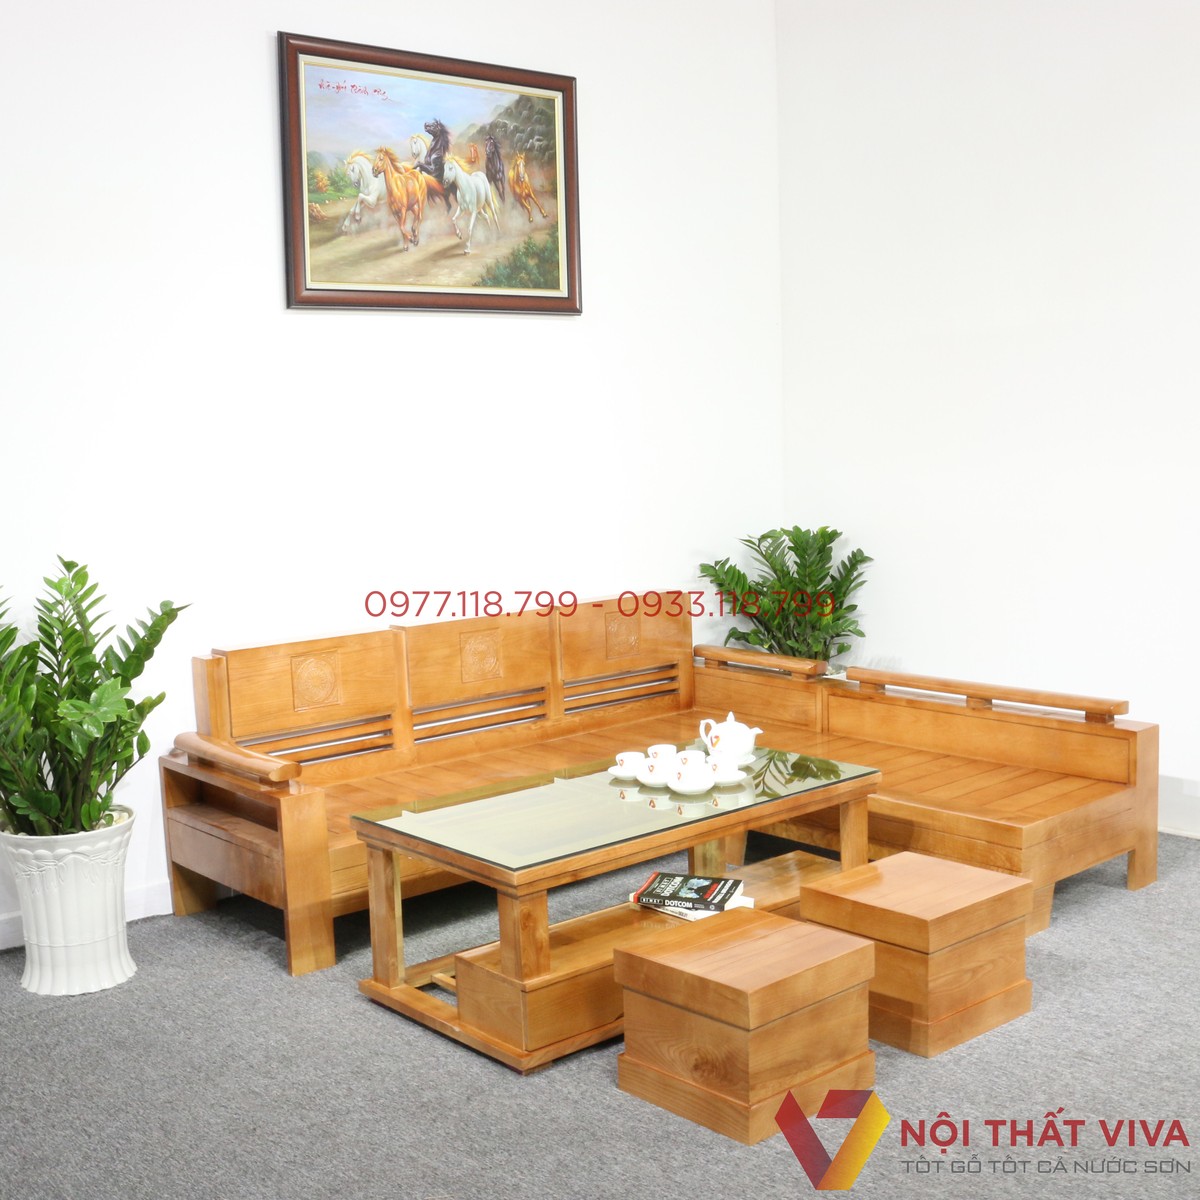 Ghế sofa gỗ giá rẻ: Ghế sofa gỗ giá rẻ sẽ giúp cho bạn tiết kiệm kinh phí hơn khi trang trí nội thất gia đình của mình. Hãy cùng khám phá những mẫu ghế sofa gỗ giá rẻ nhất và đẹp nhất trong các bức hình, mà không làm hại đến sức khỏe của bạn.